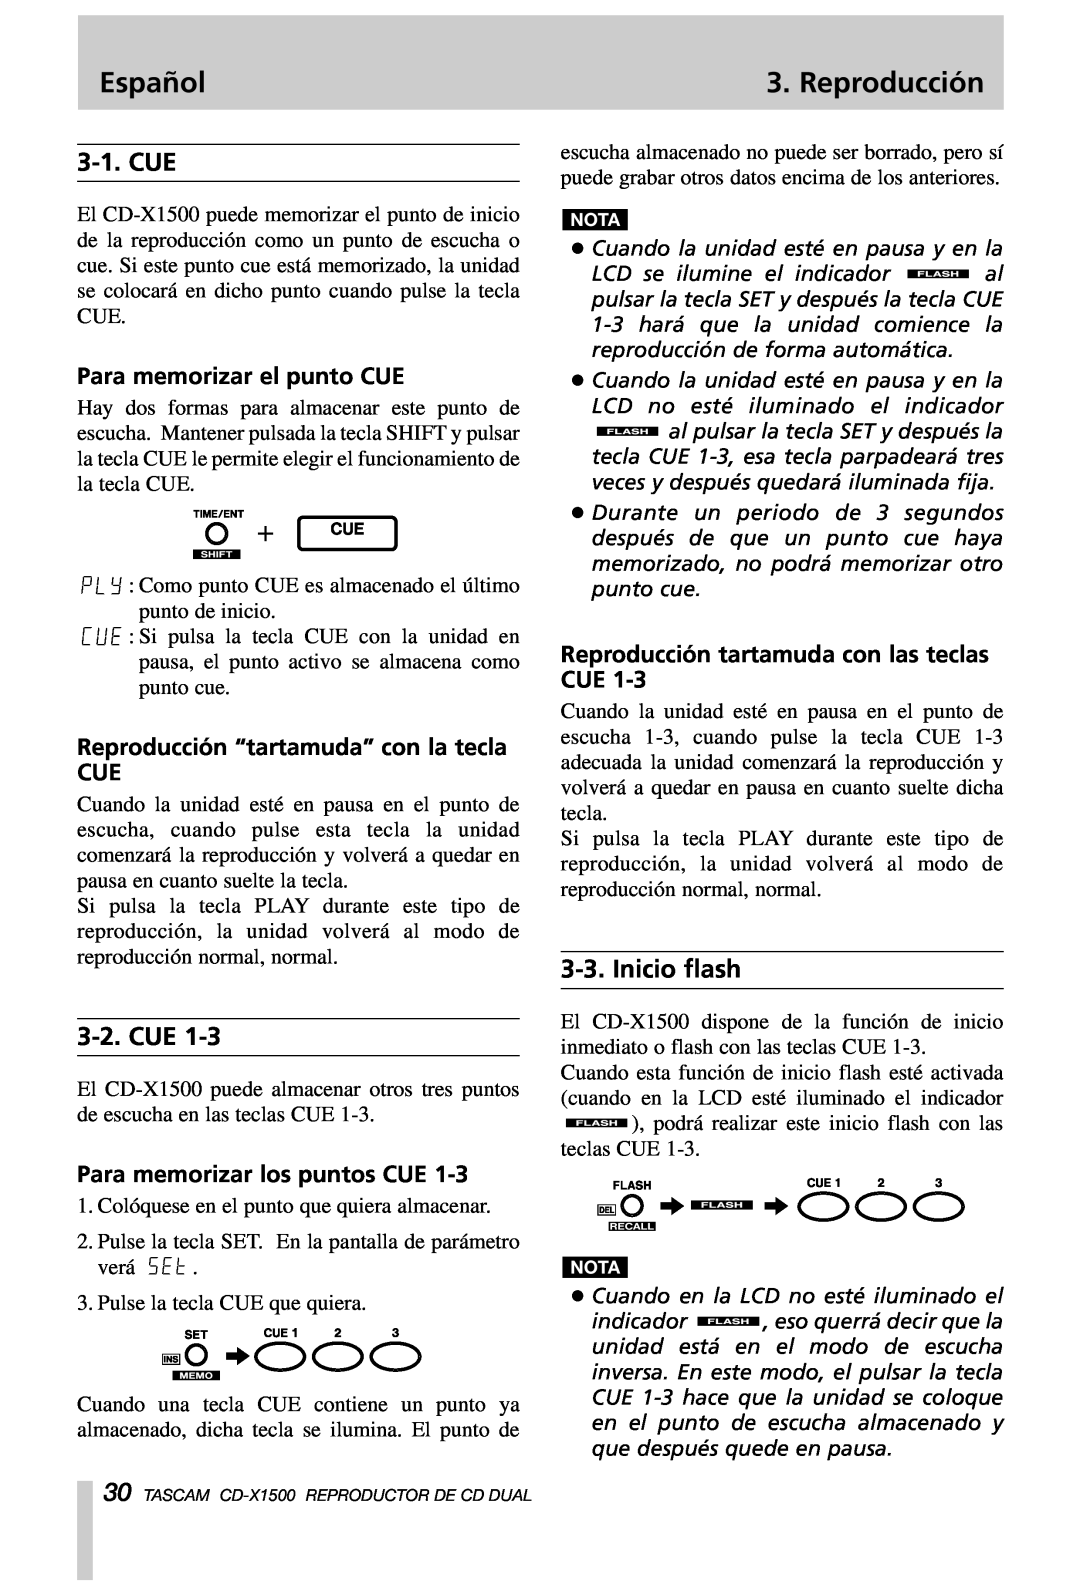 Tascam CD-X1500 Inicio flash, Para memorizar el punto CUE, Reproducción “tartamuda” con la tecla CUE, Español, Cue 